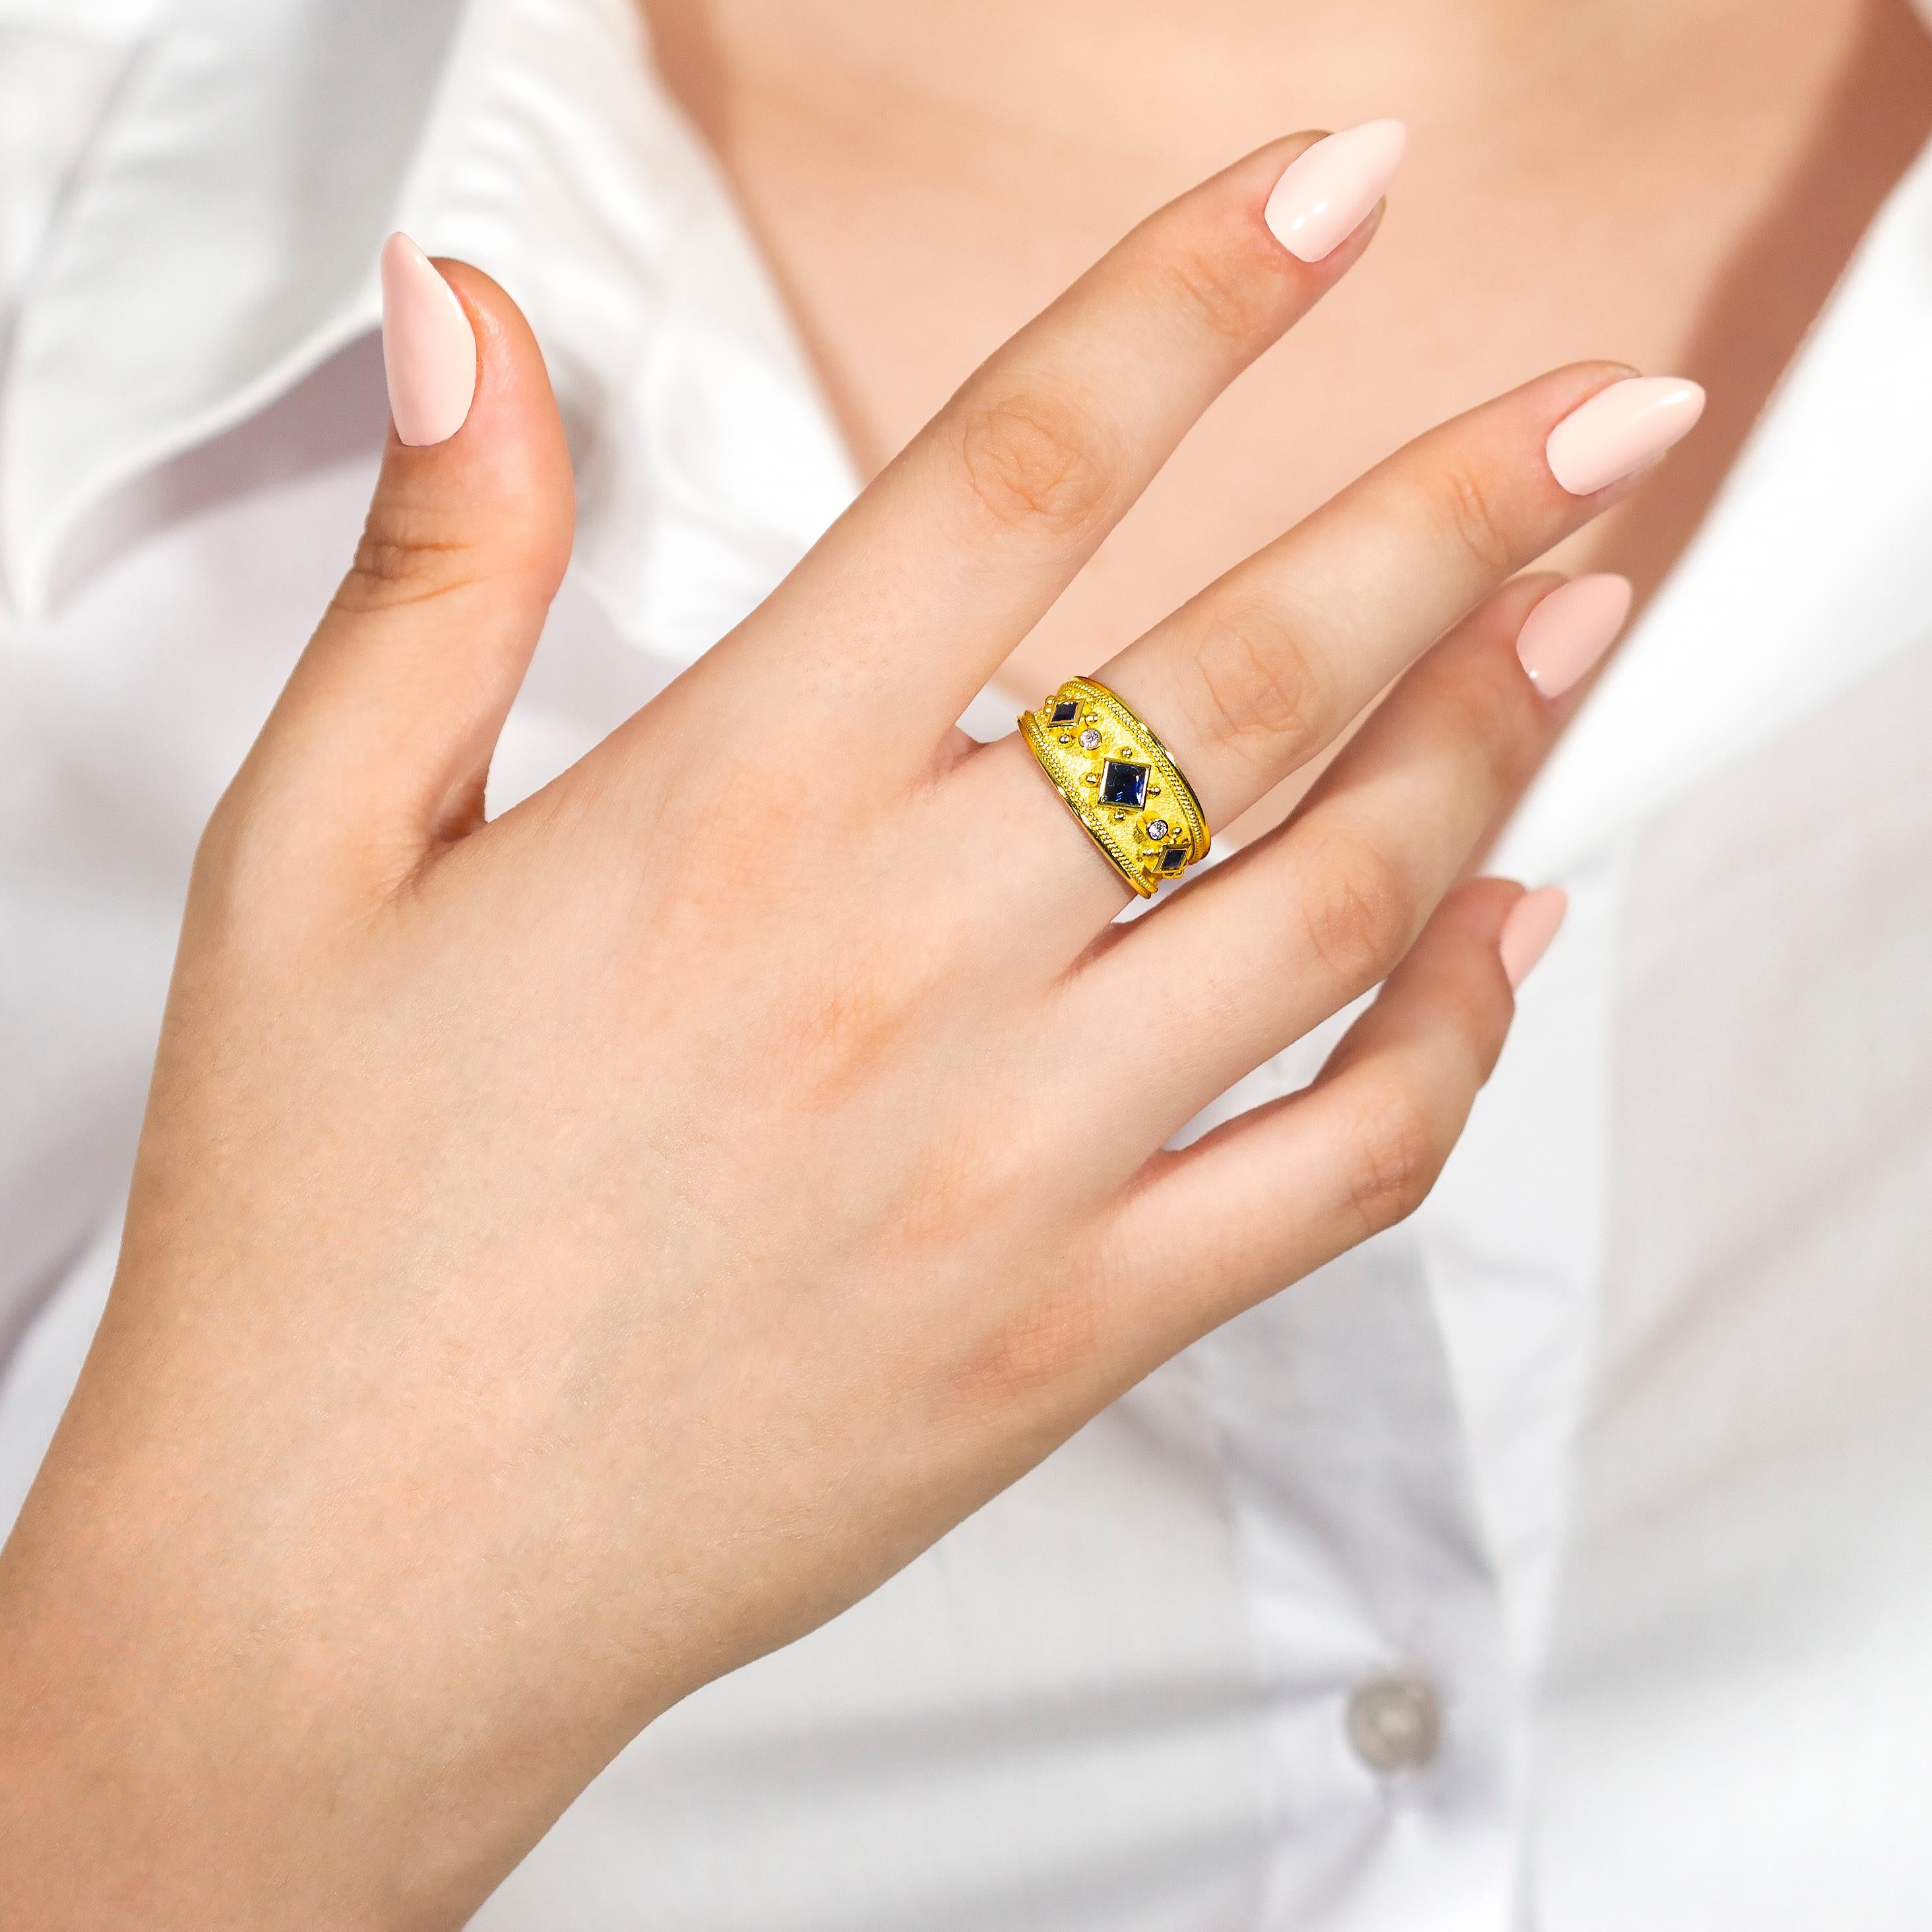 Dieser exquisite Saphir-Goldring ist ein echter Hingucker. Aus reinem Gold gefertigt und mit schillernden Diamanten besetzt, strahlt er Raffinesse und Luxus aus. Die perfekte Verbindung von modernem Design und zeitloser Eleganz macht ihn zu einem